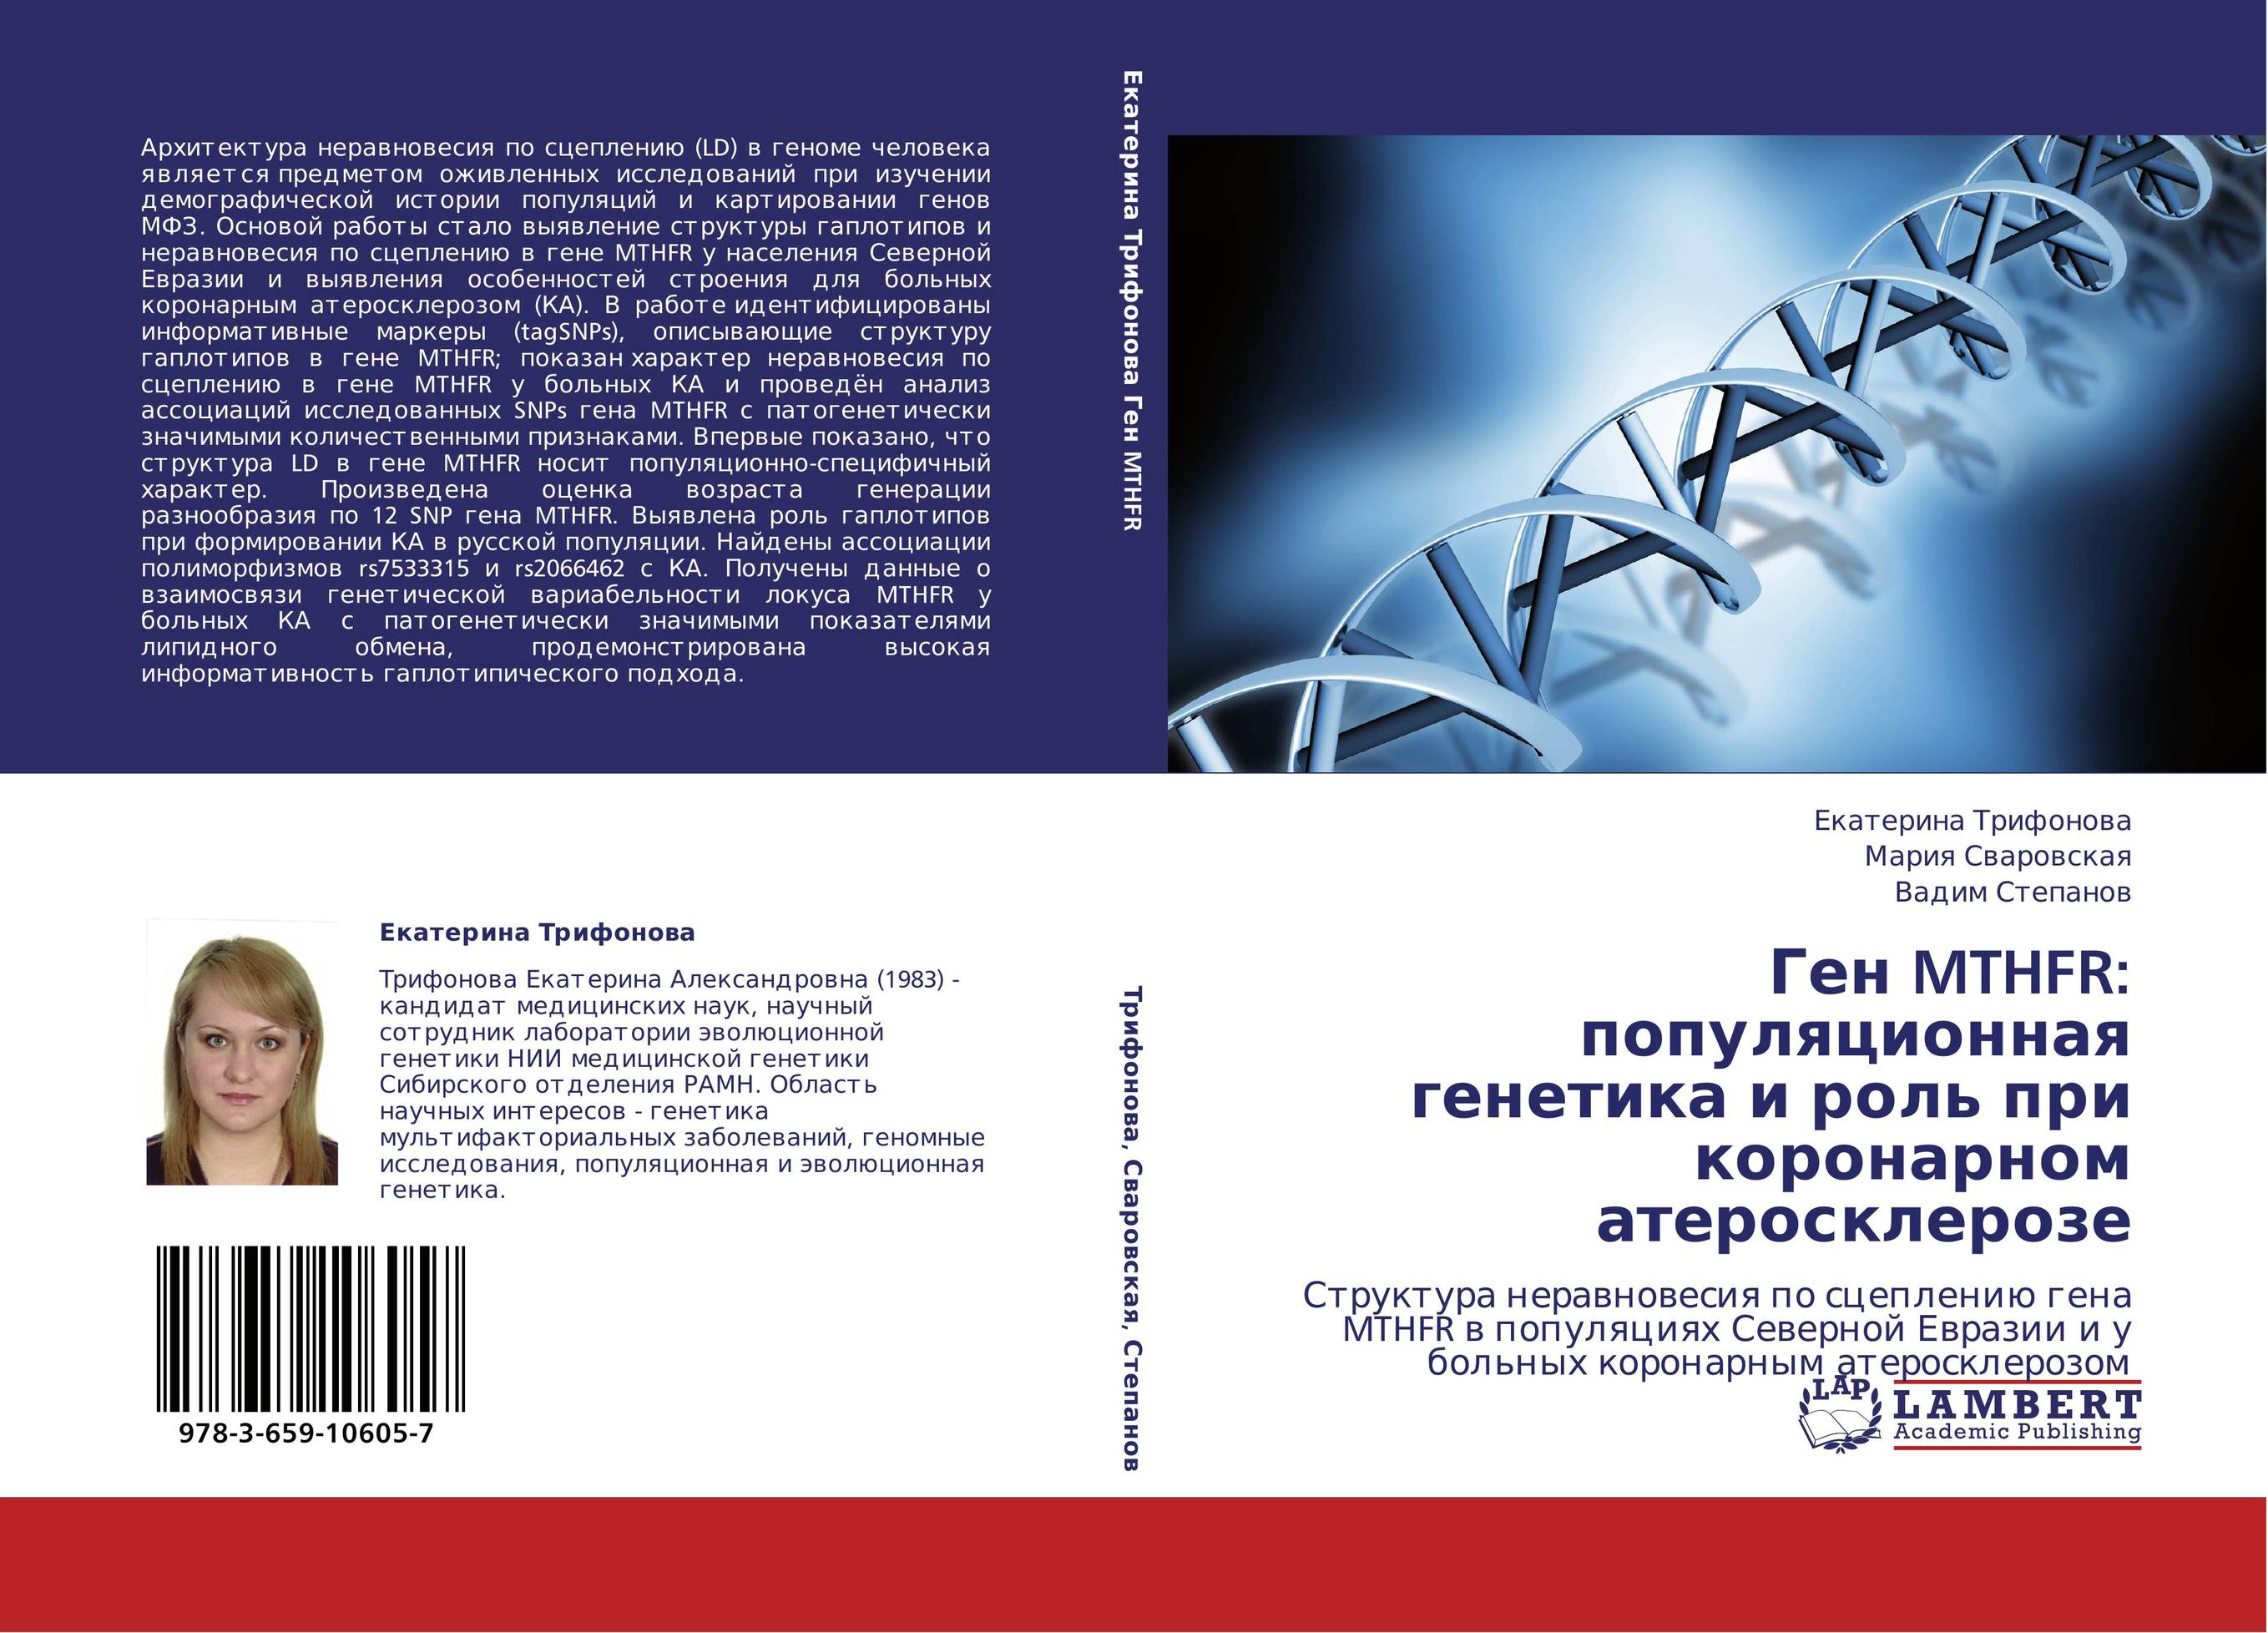 Ген MTHFR: популяционная генетика и роль при коронарном атеросклерозе. Структура неравновесия по сцеплению гена MTHFR в популяциях Северной Евразии и у больных коронарным атеросклерозом.